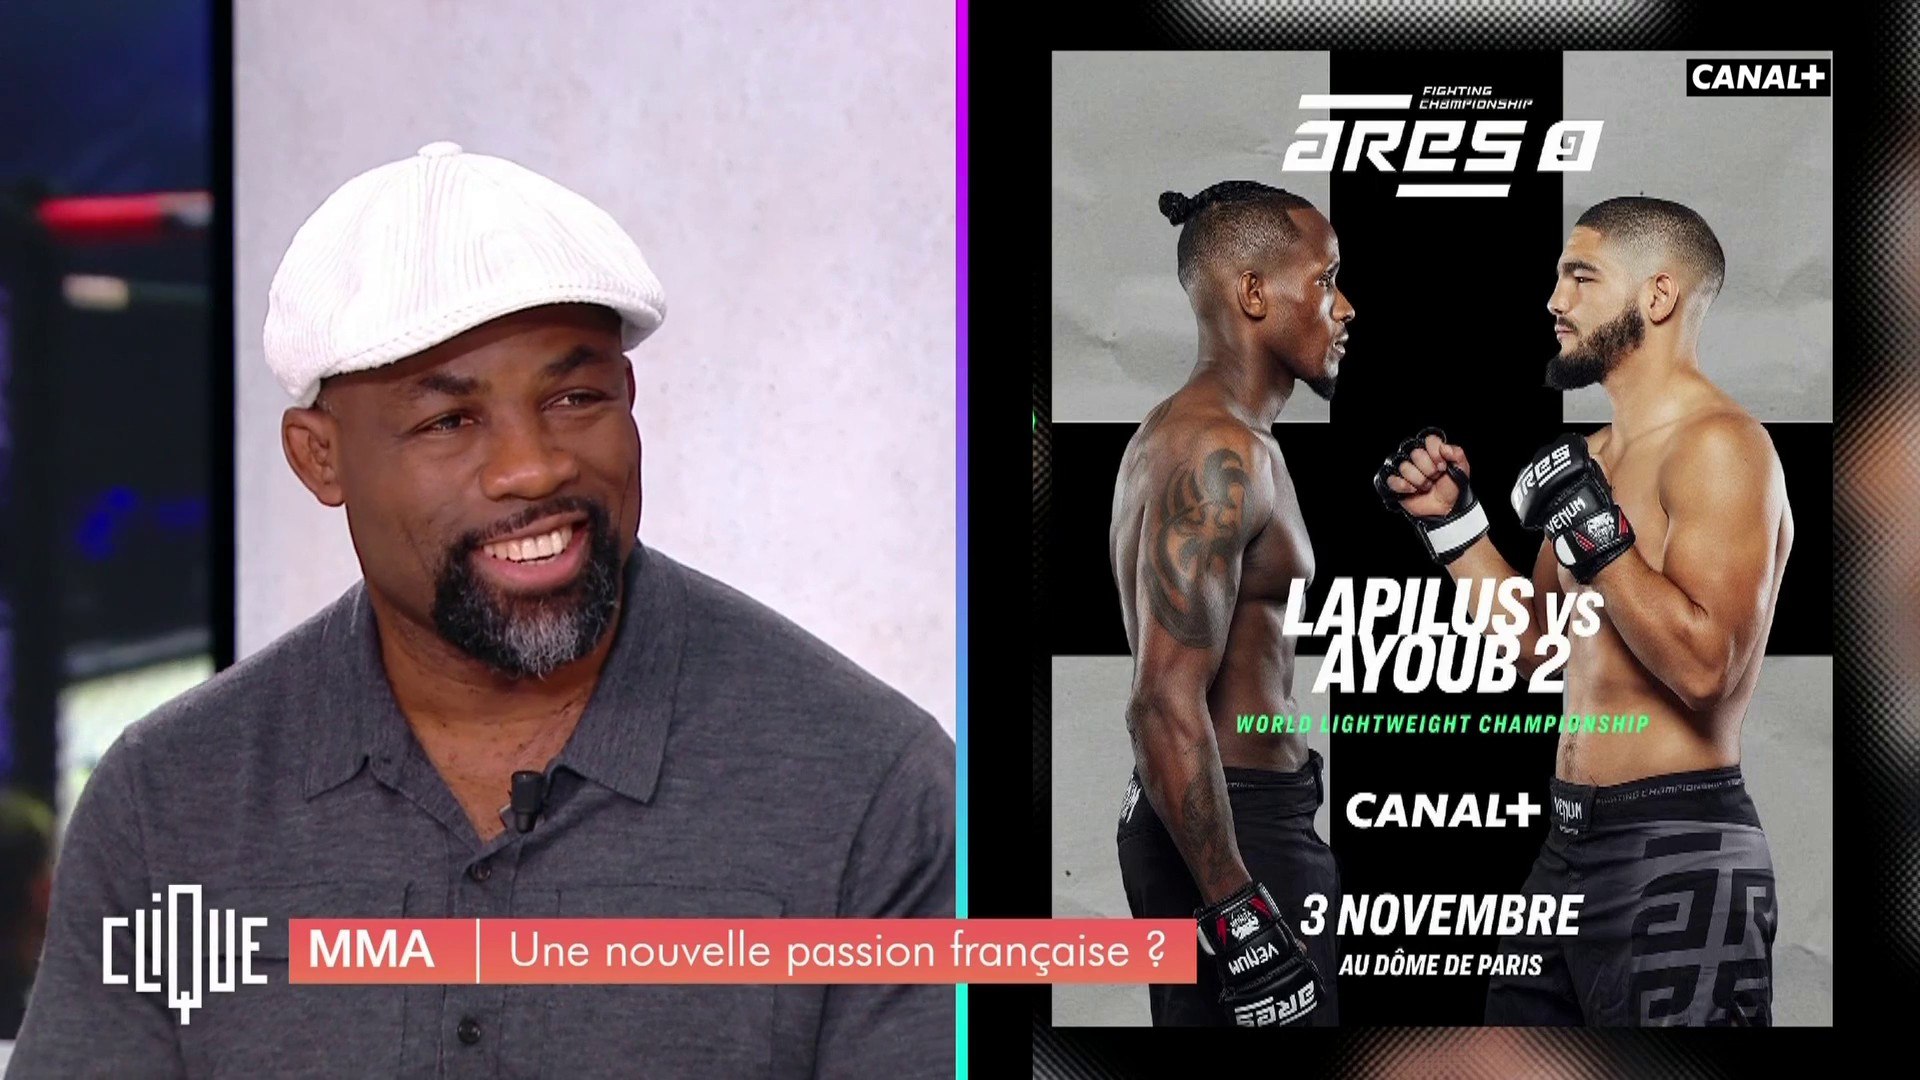 MMA, une nouvelle passion française ? - Clique - CANAL+ - Vidéo Dailymotion